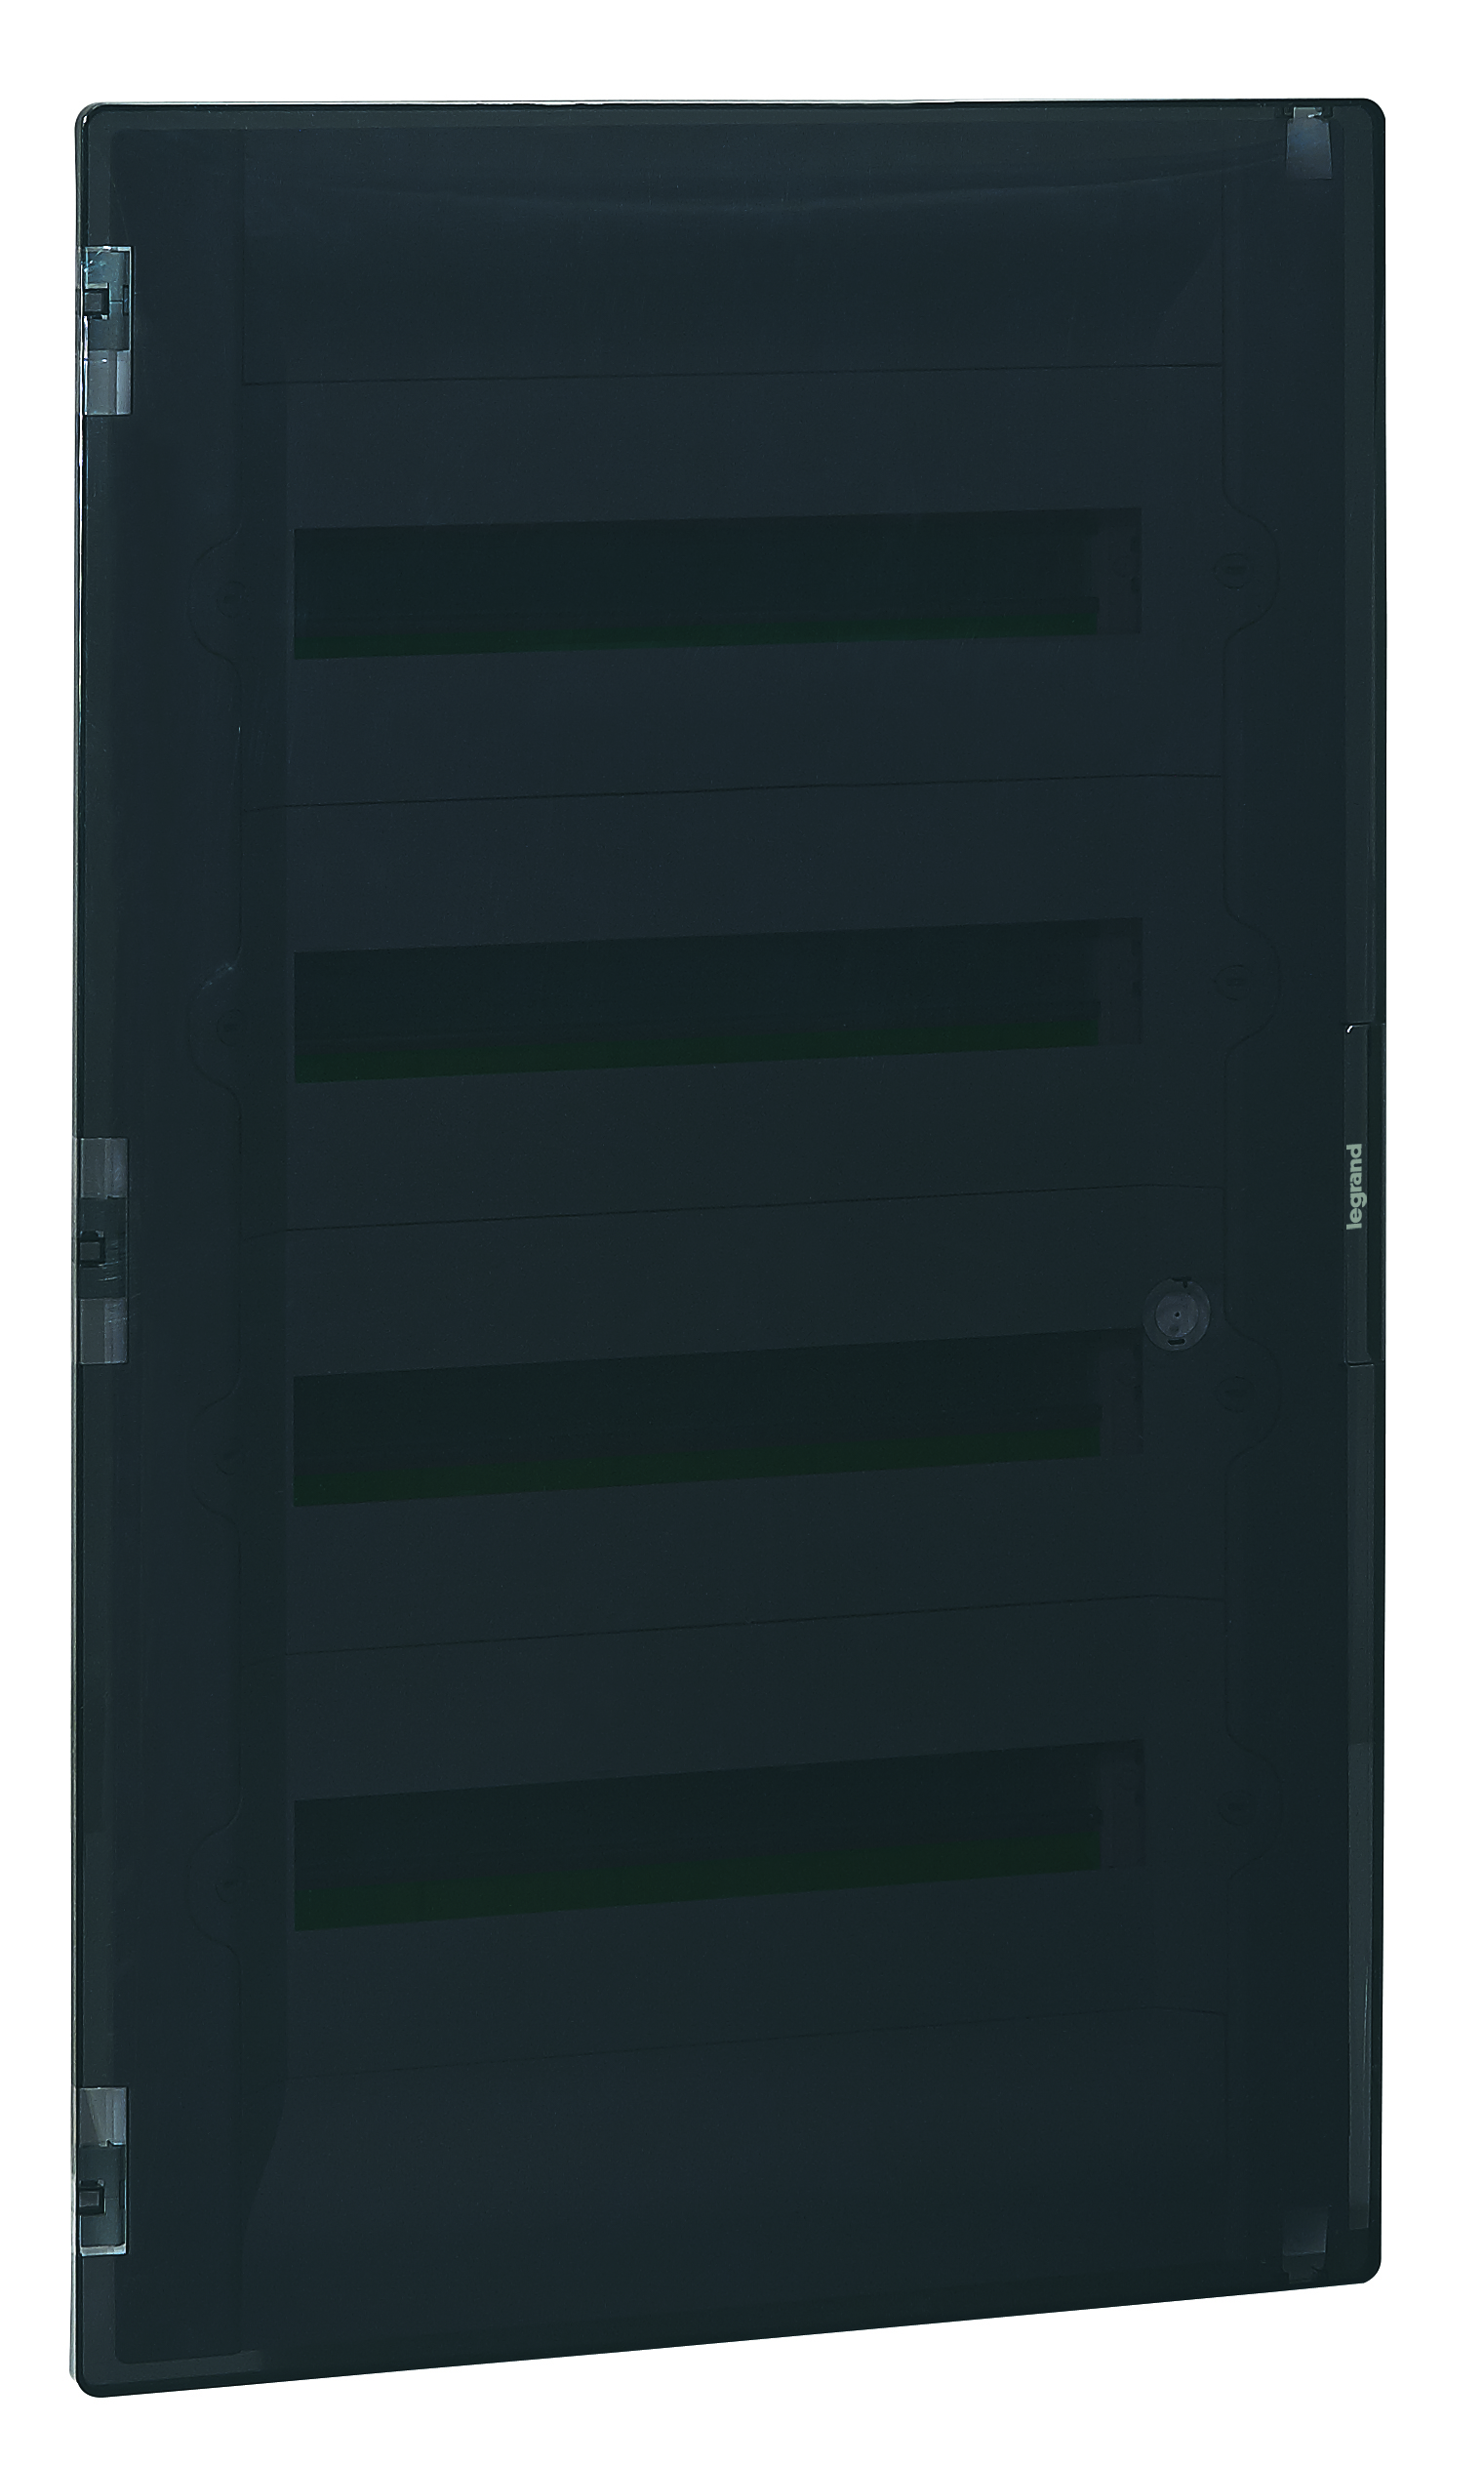 Распределительный щиток Practibox³ скрытого монтажа - IP 40 - IK 07 - 4 рейки - 72 модуля - с клеммниками заземления и нейтрали - прозрачная дверь 401759 Legrand